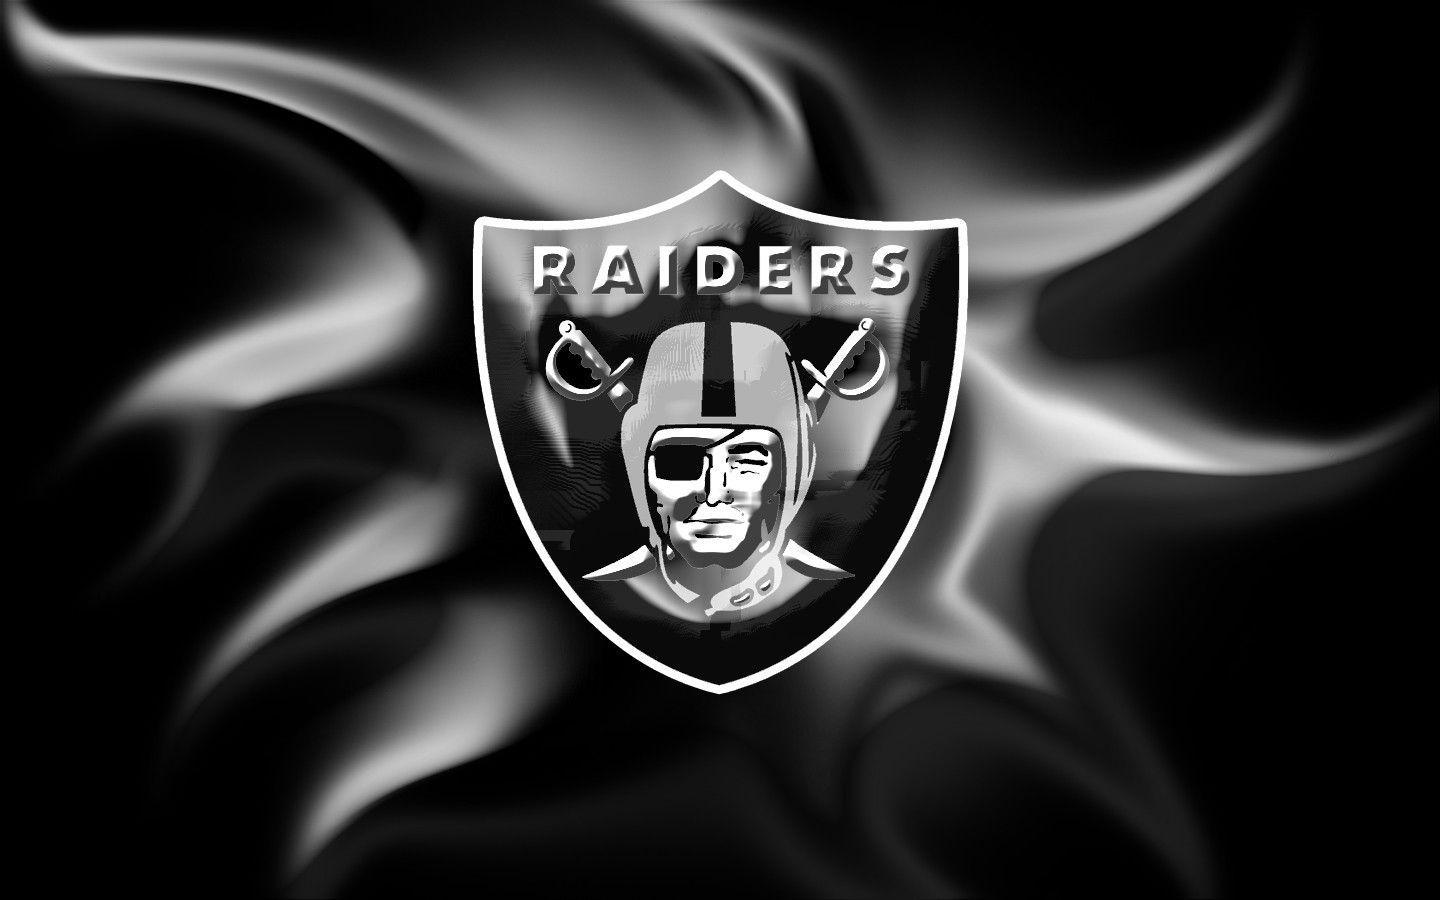 Oakland Raiders Skull Logo